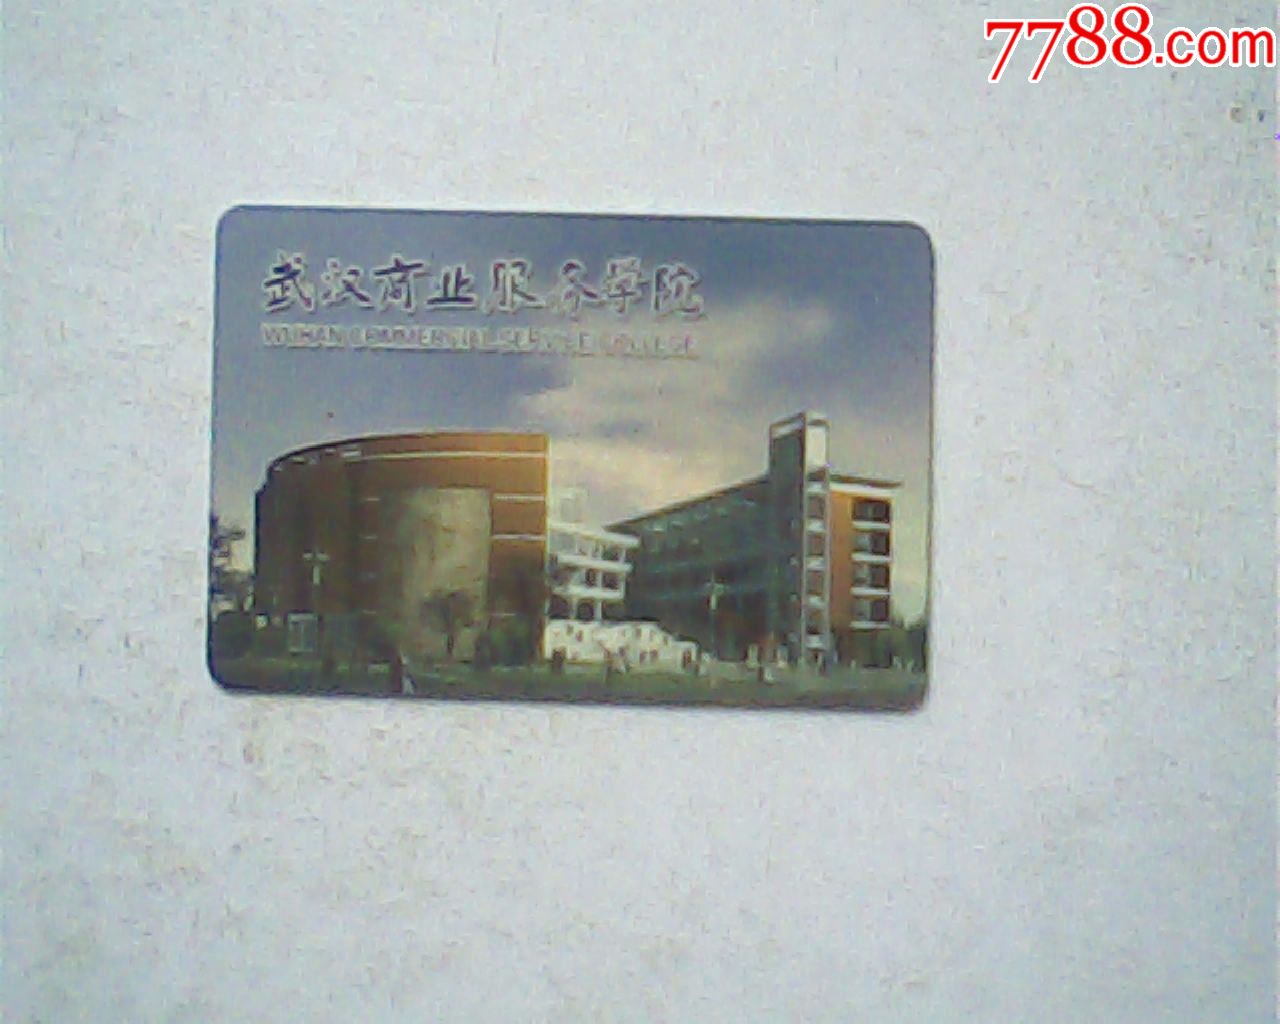 校园卡,武汉商业服务学院,已失效仅供收藏